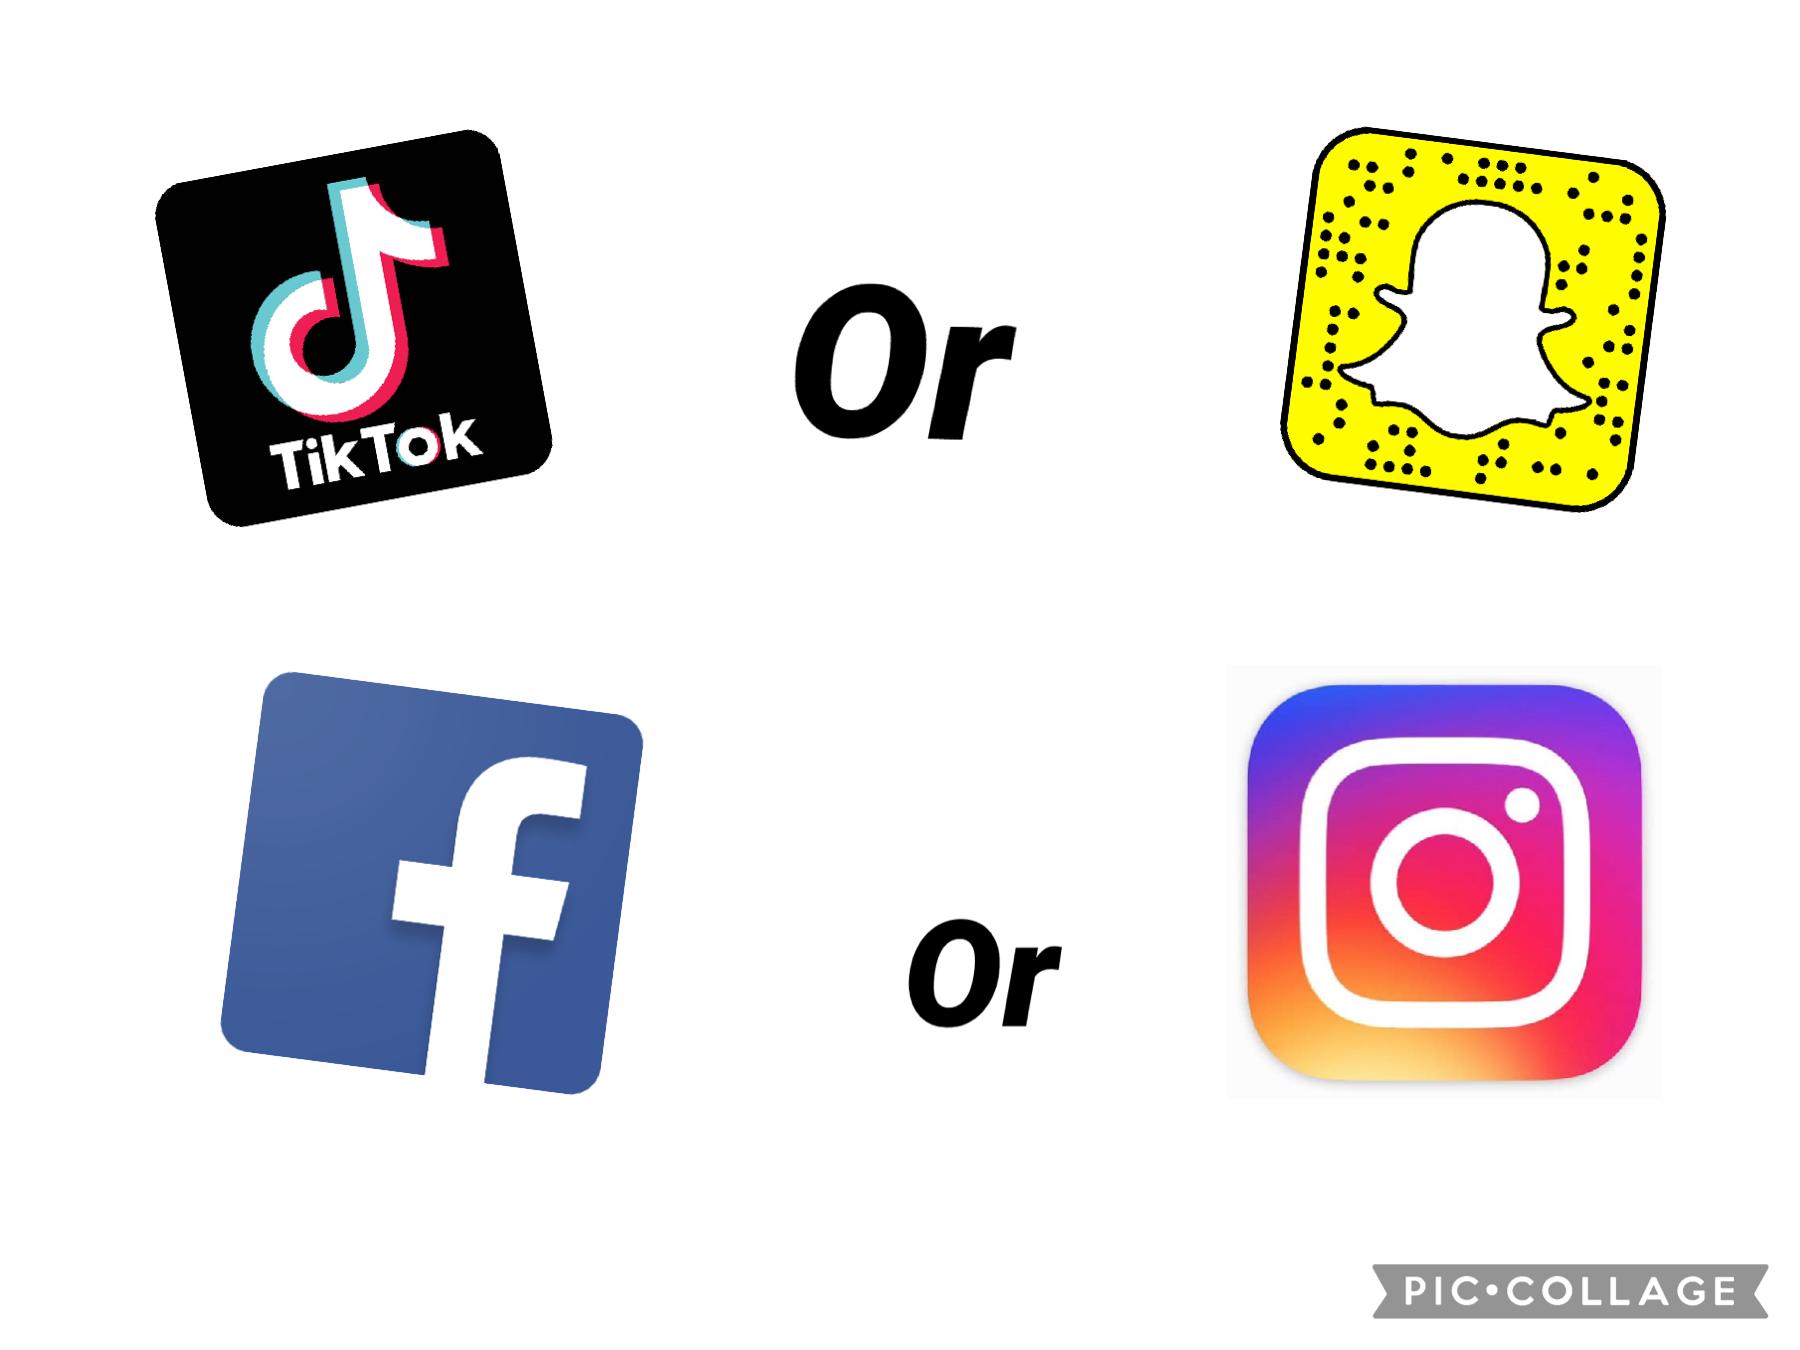 TikTok or Snapchat (tap🦋)
Facebook or Instagram 